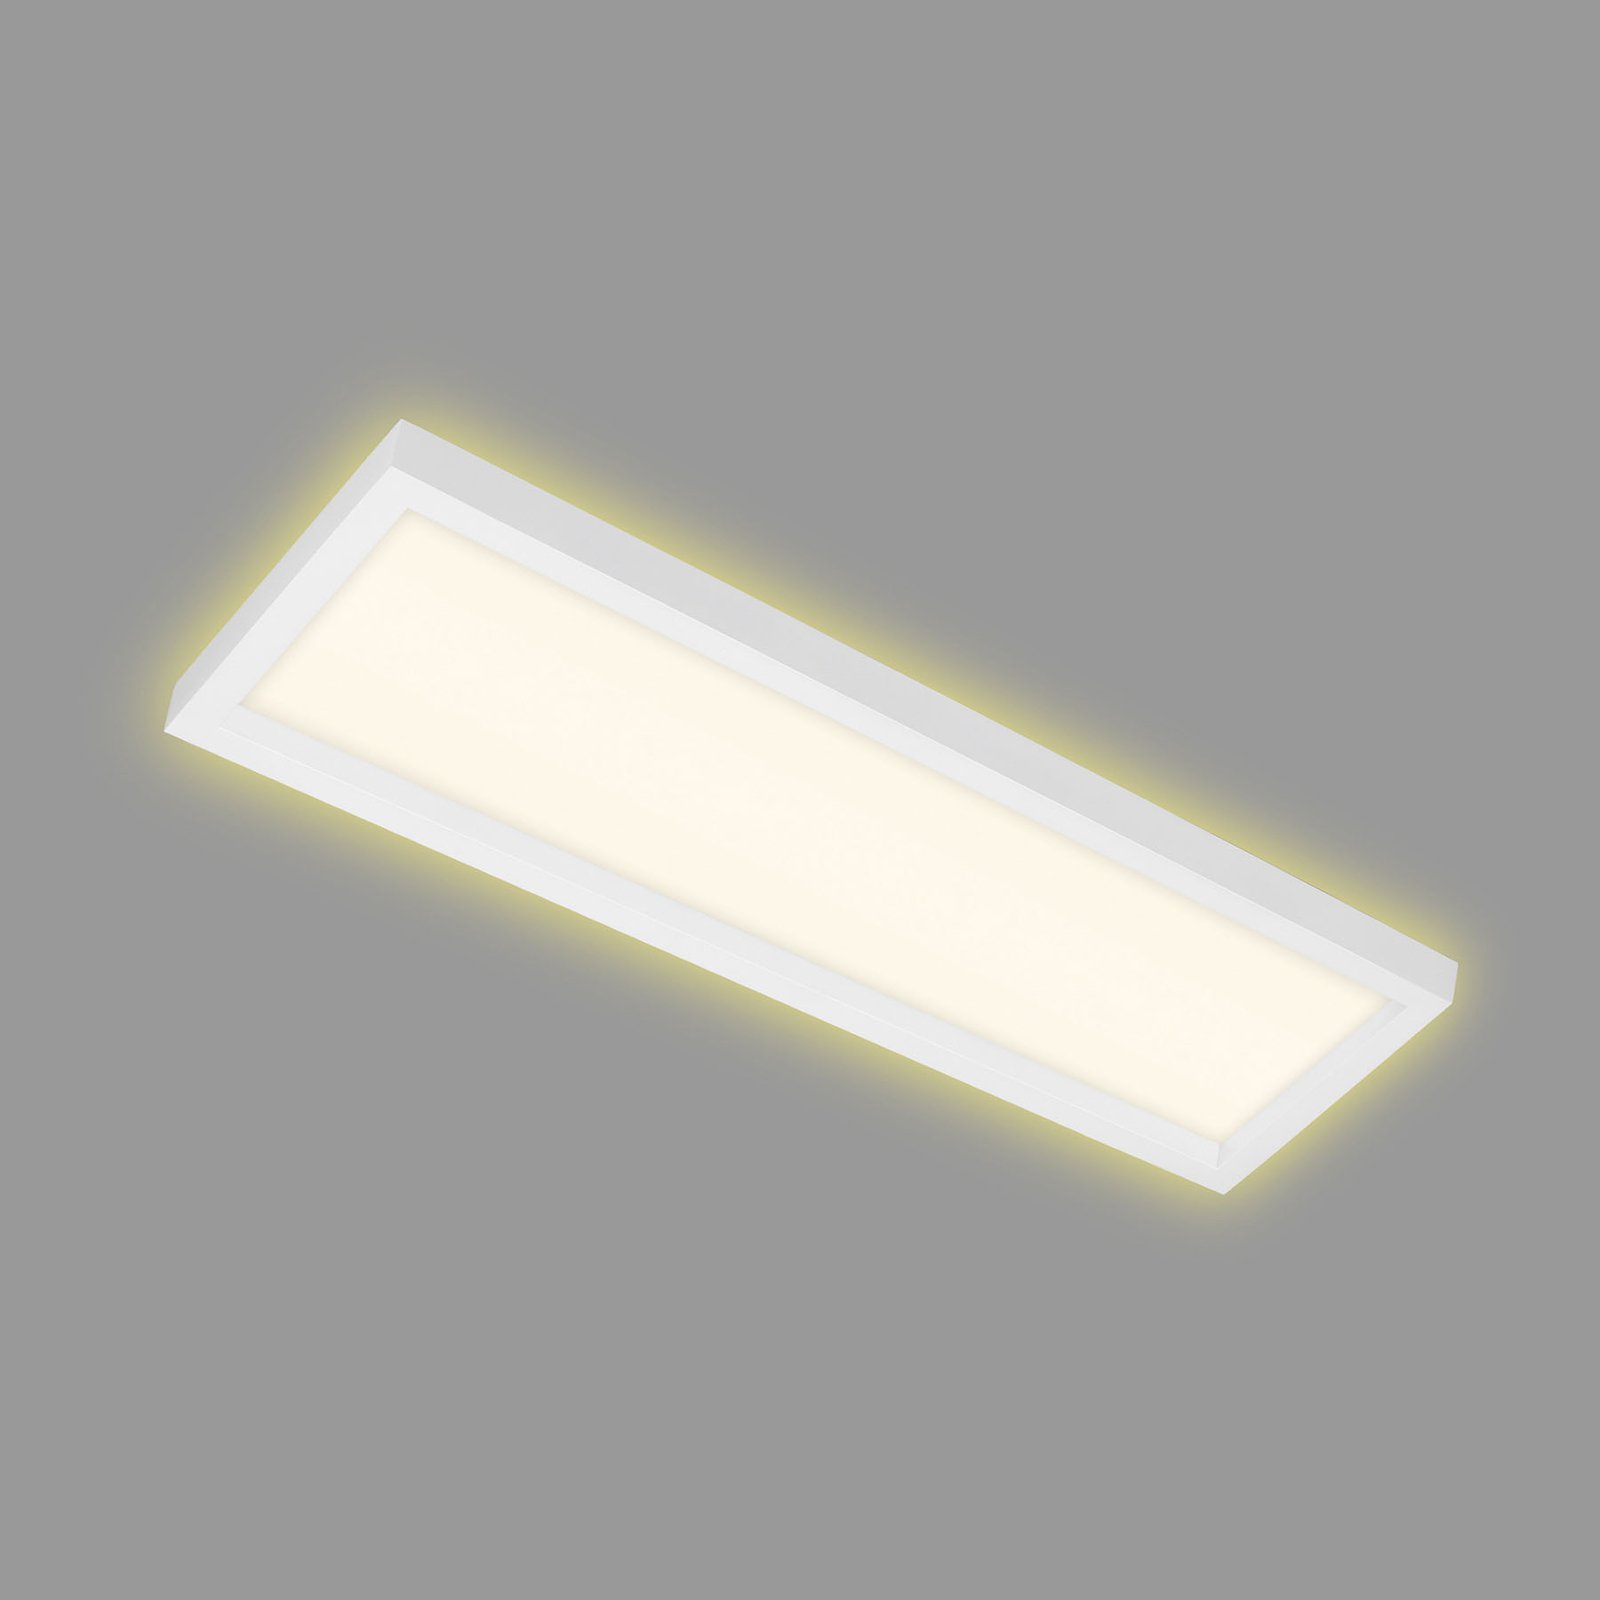 LED-Deckenlampe 7365, 58 x 20 cm, weiß